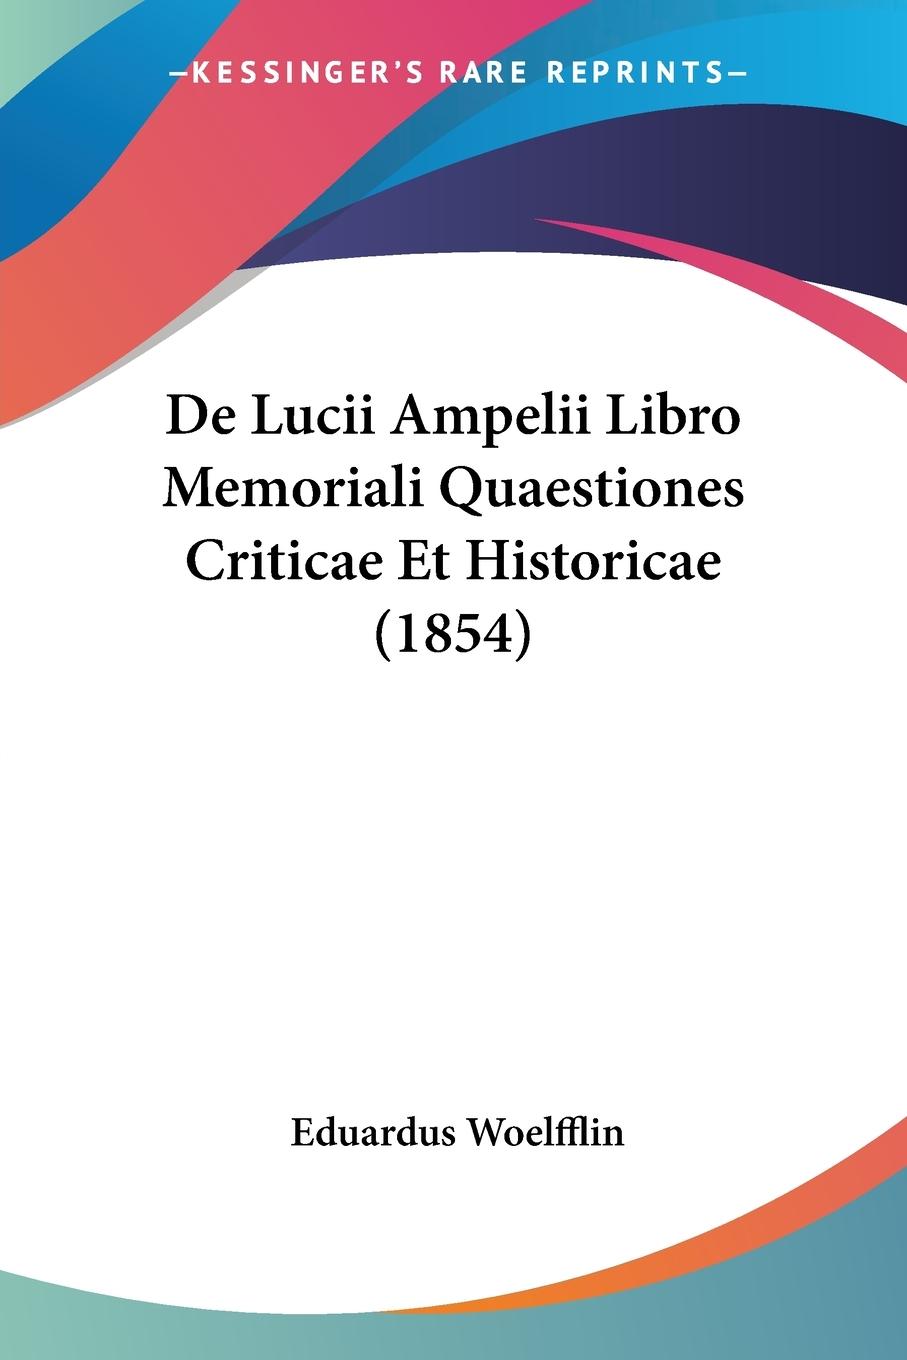 De Lucii Ampelii Libro Memoriali Quaestiones Criticae Et Historicae (1854) - Woelfflin, Eduardus